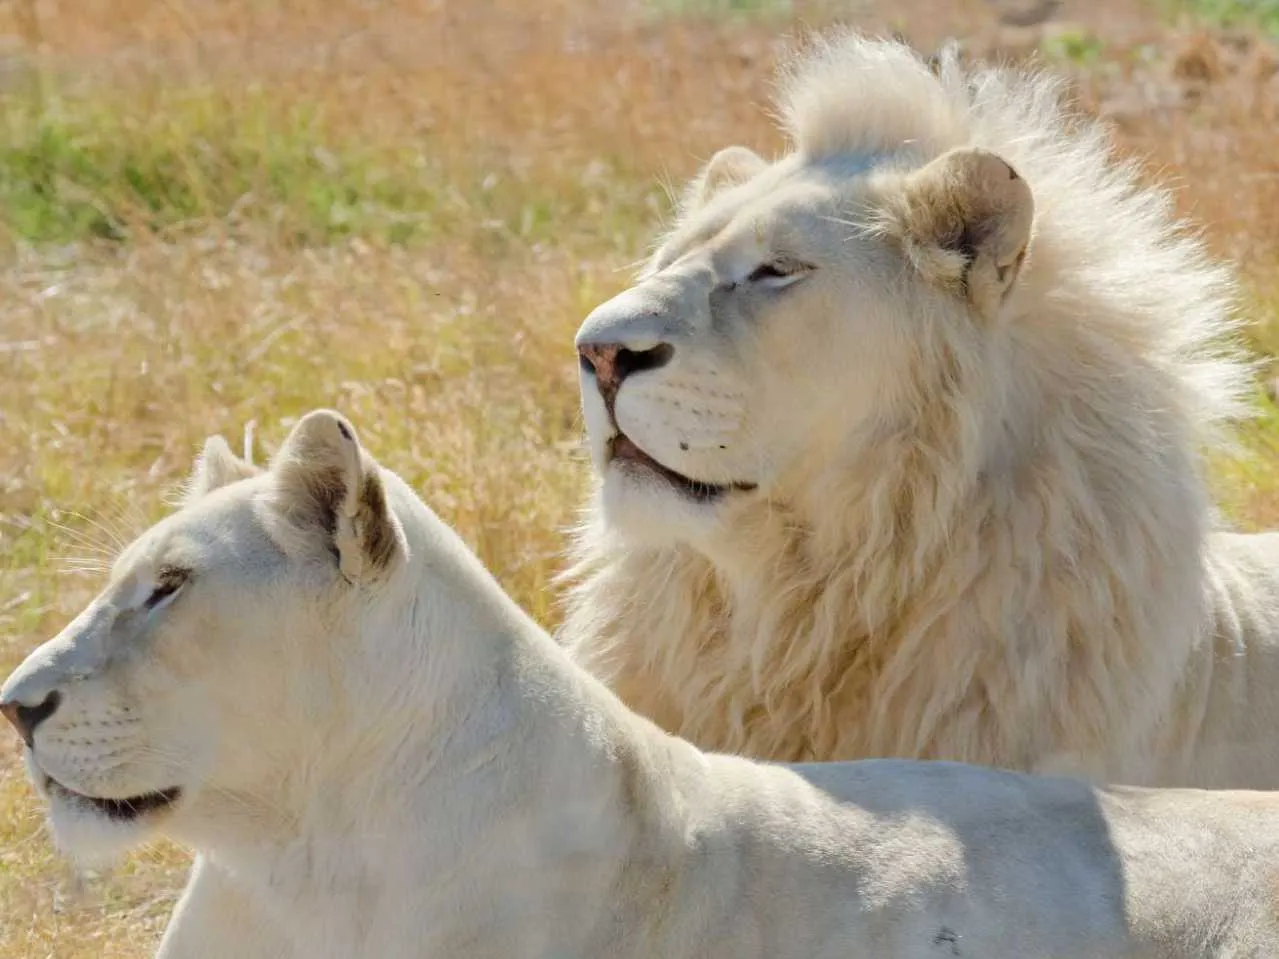 Two white lion